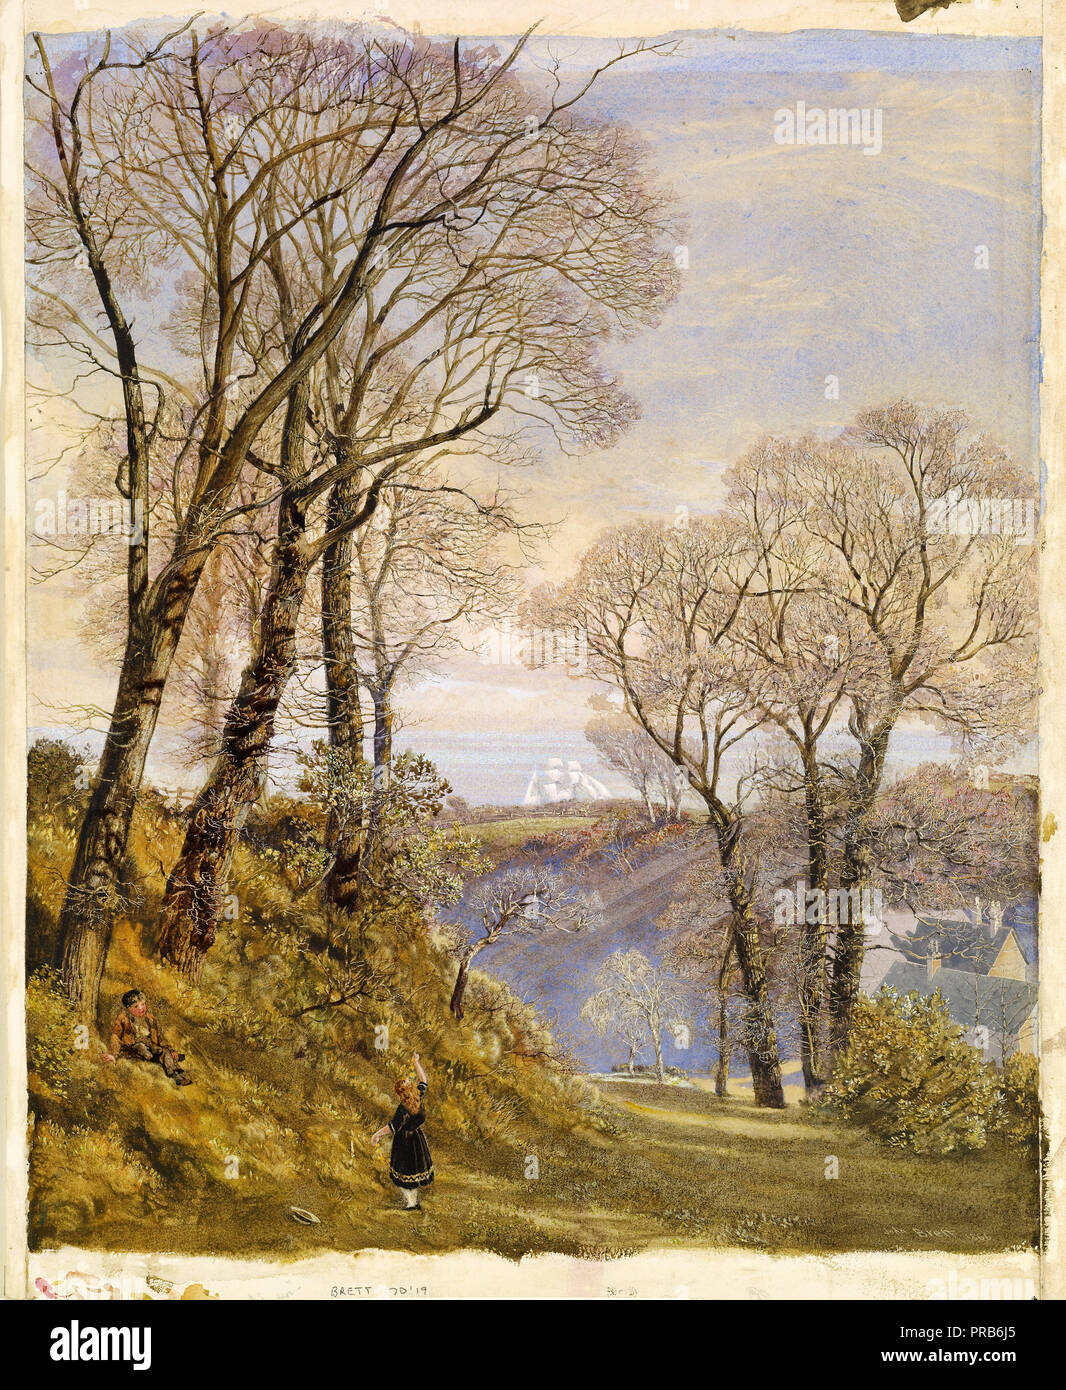 John Brett, février dans l'île de Wight 1866 aquarelle sur papier, Birmingham Museum and Art Gallery, en Angleterre. Banque D'Images